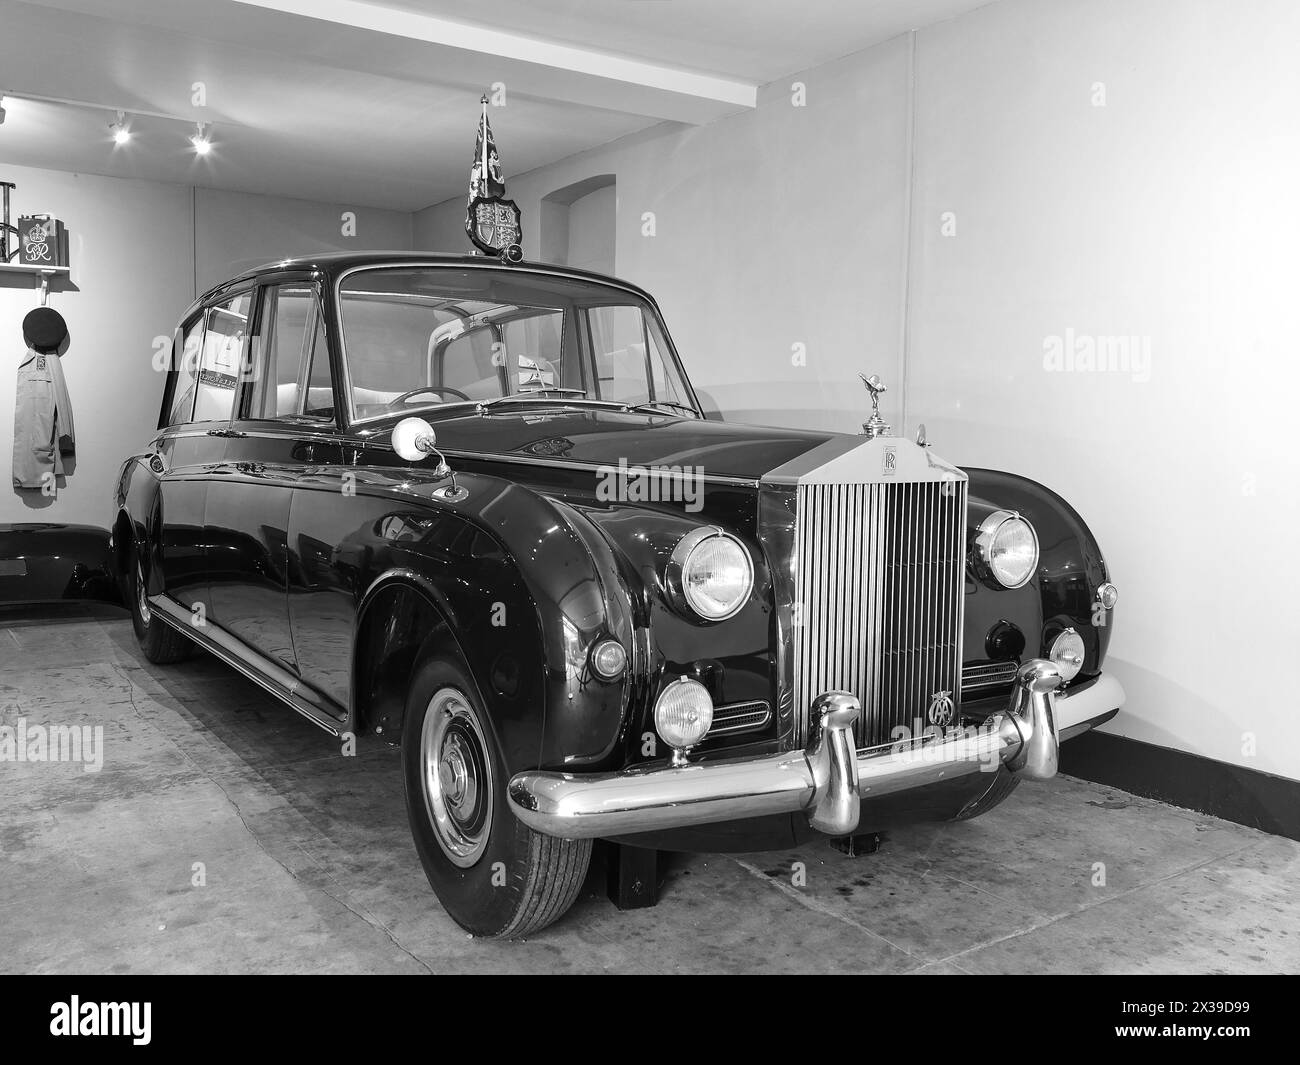 Rolls Royce Phantom Car, von 1961 bis 2002 von Königin Elisabeth II. Benutzt, in einer Garage in der Landresidenz des britischen Monarchen Sandringham House. Stockfoto